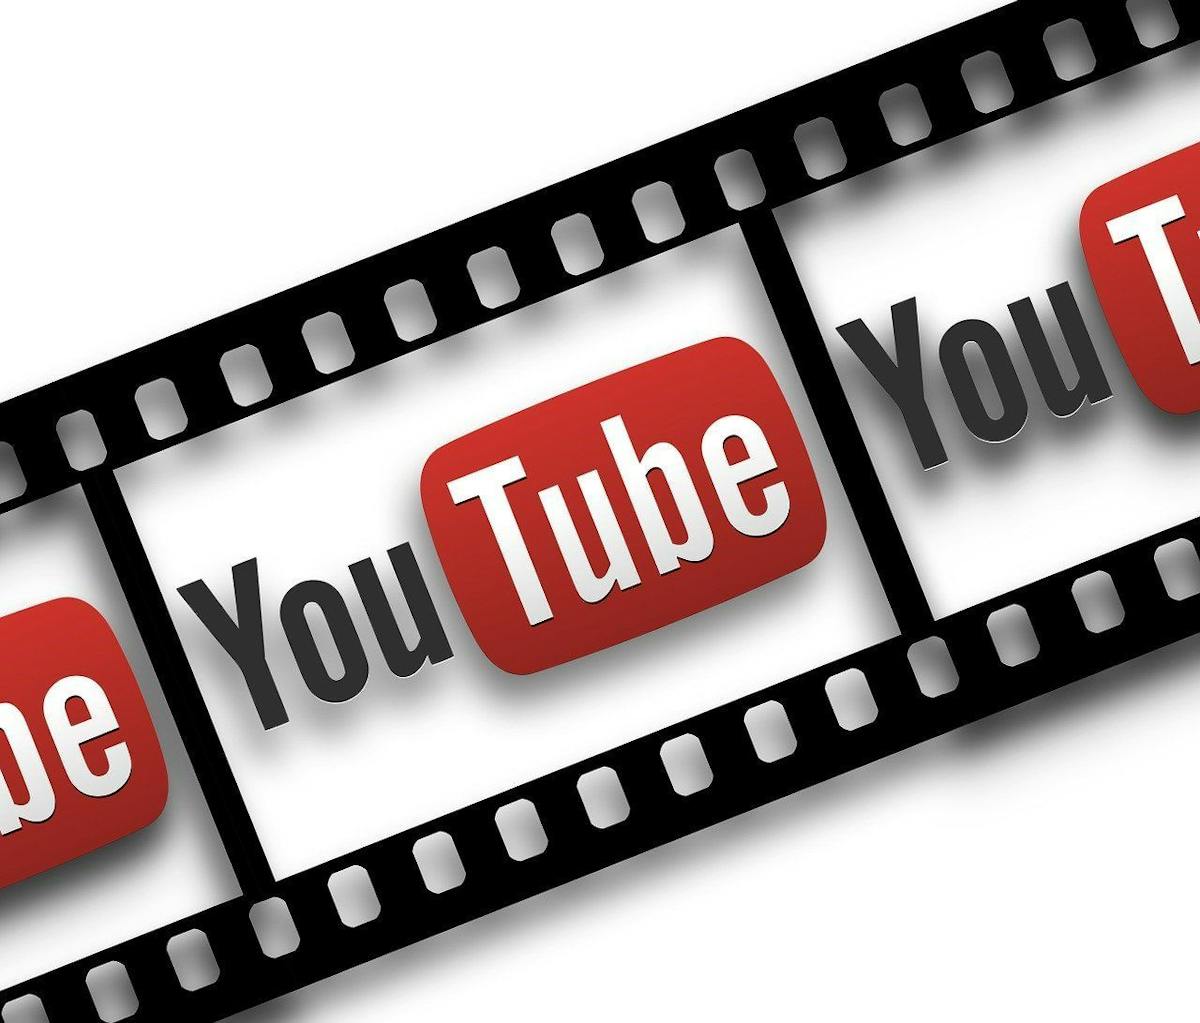 Youtube: Massenloschung von Kryptovideos aufgeklart